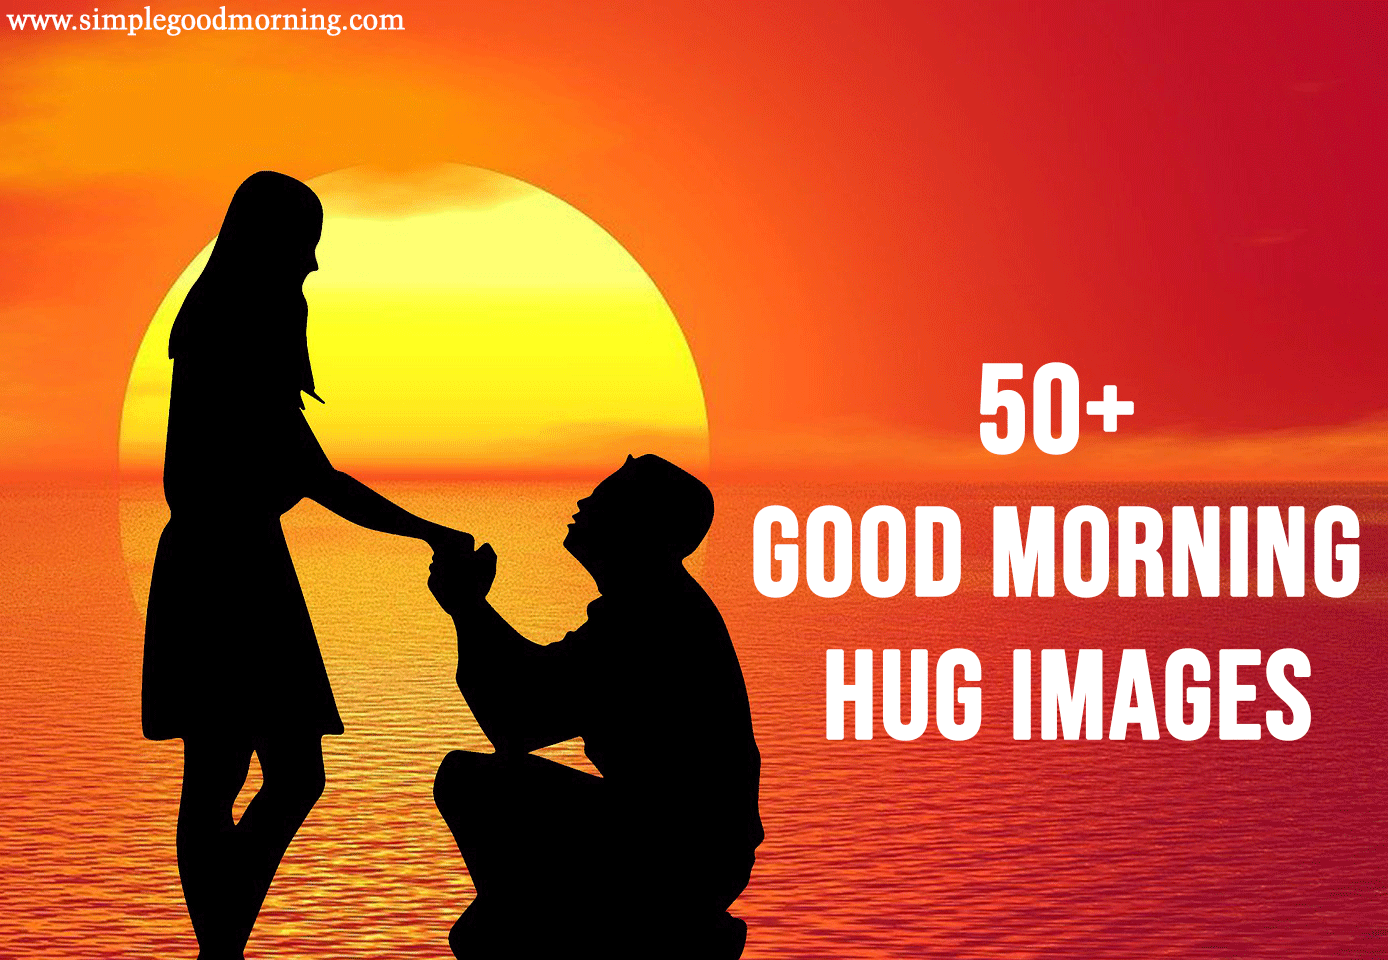 50+ Good Morning Hug Images